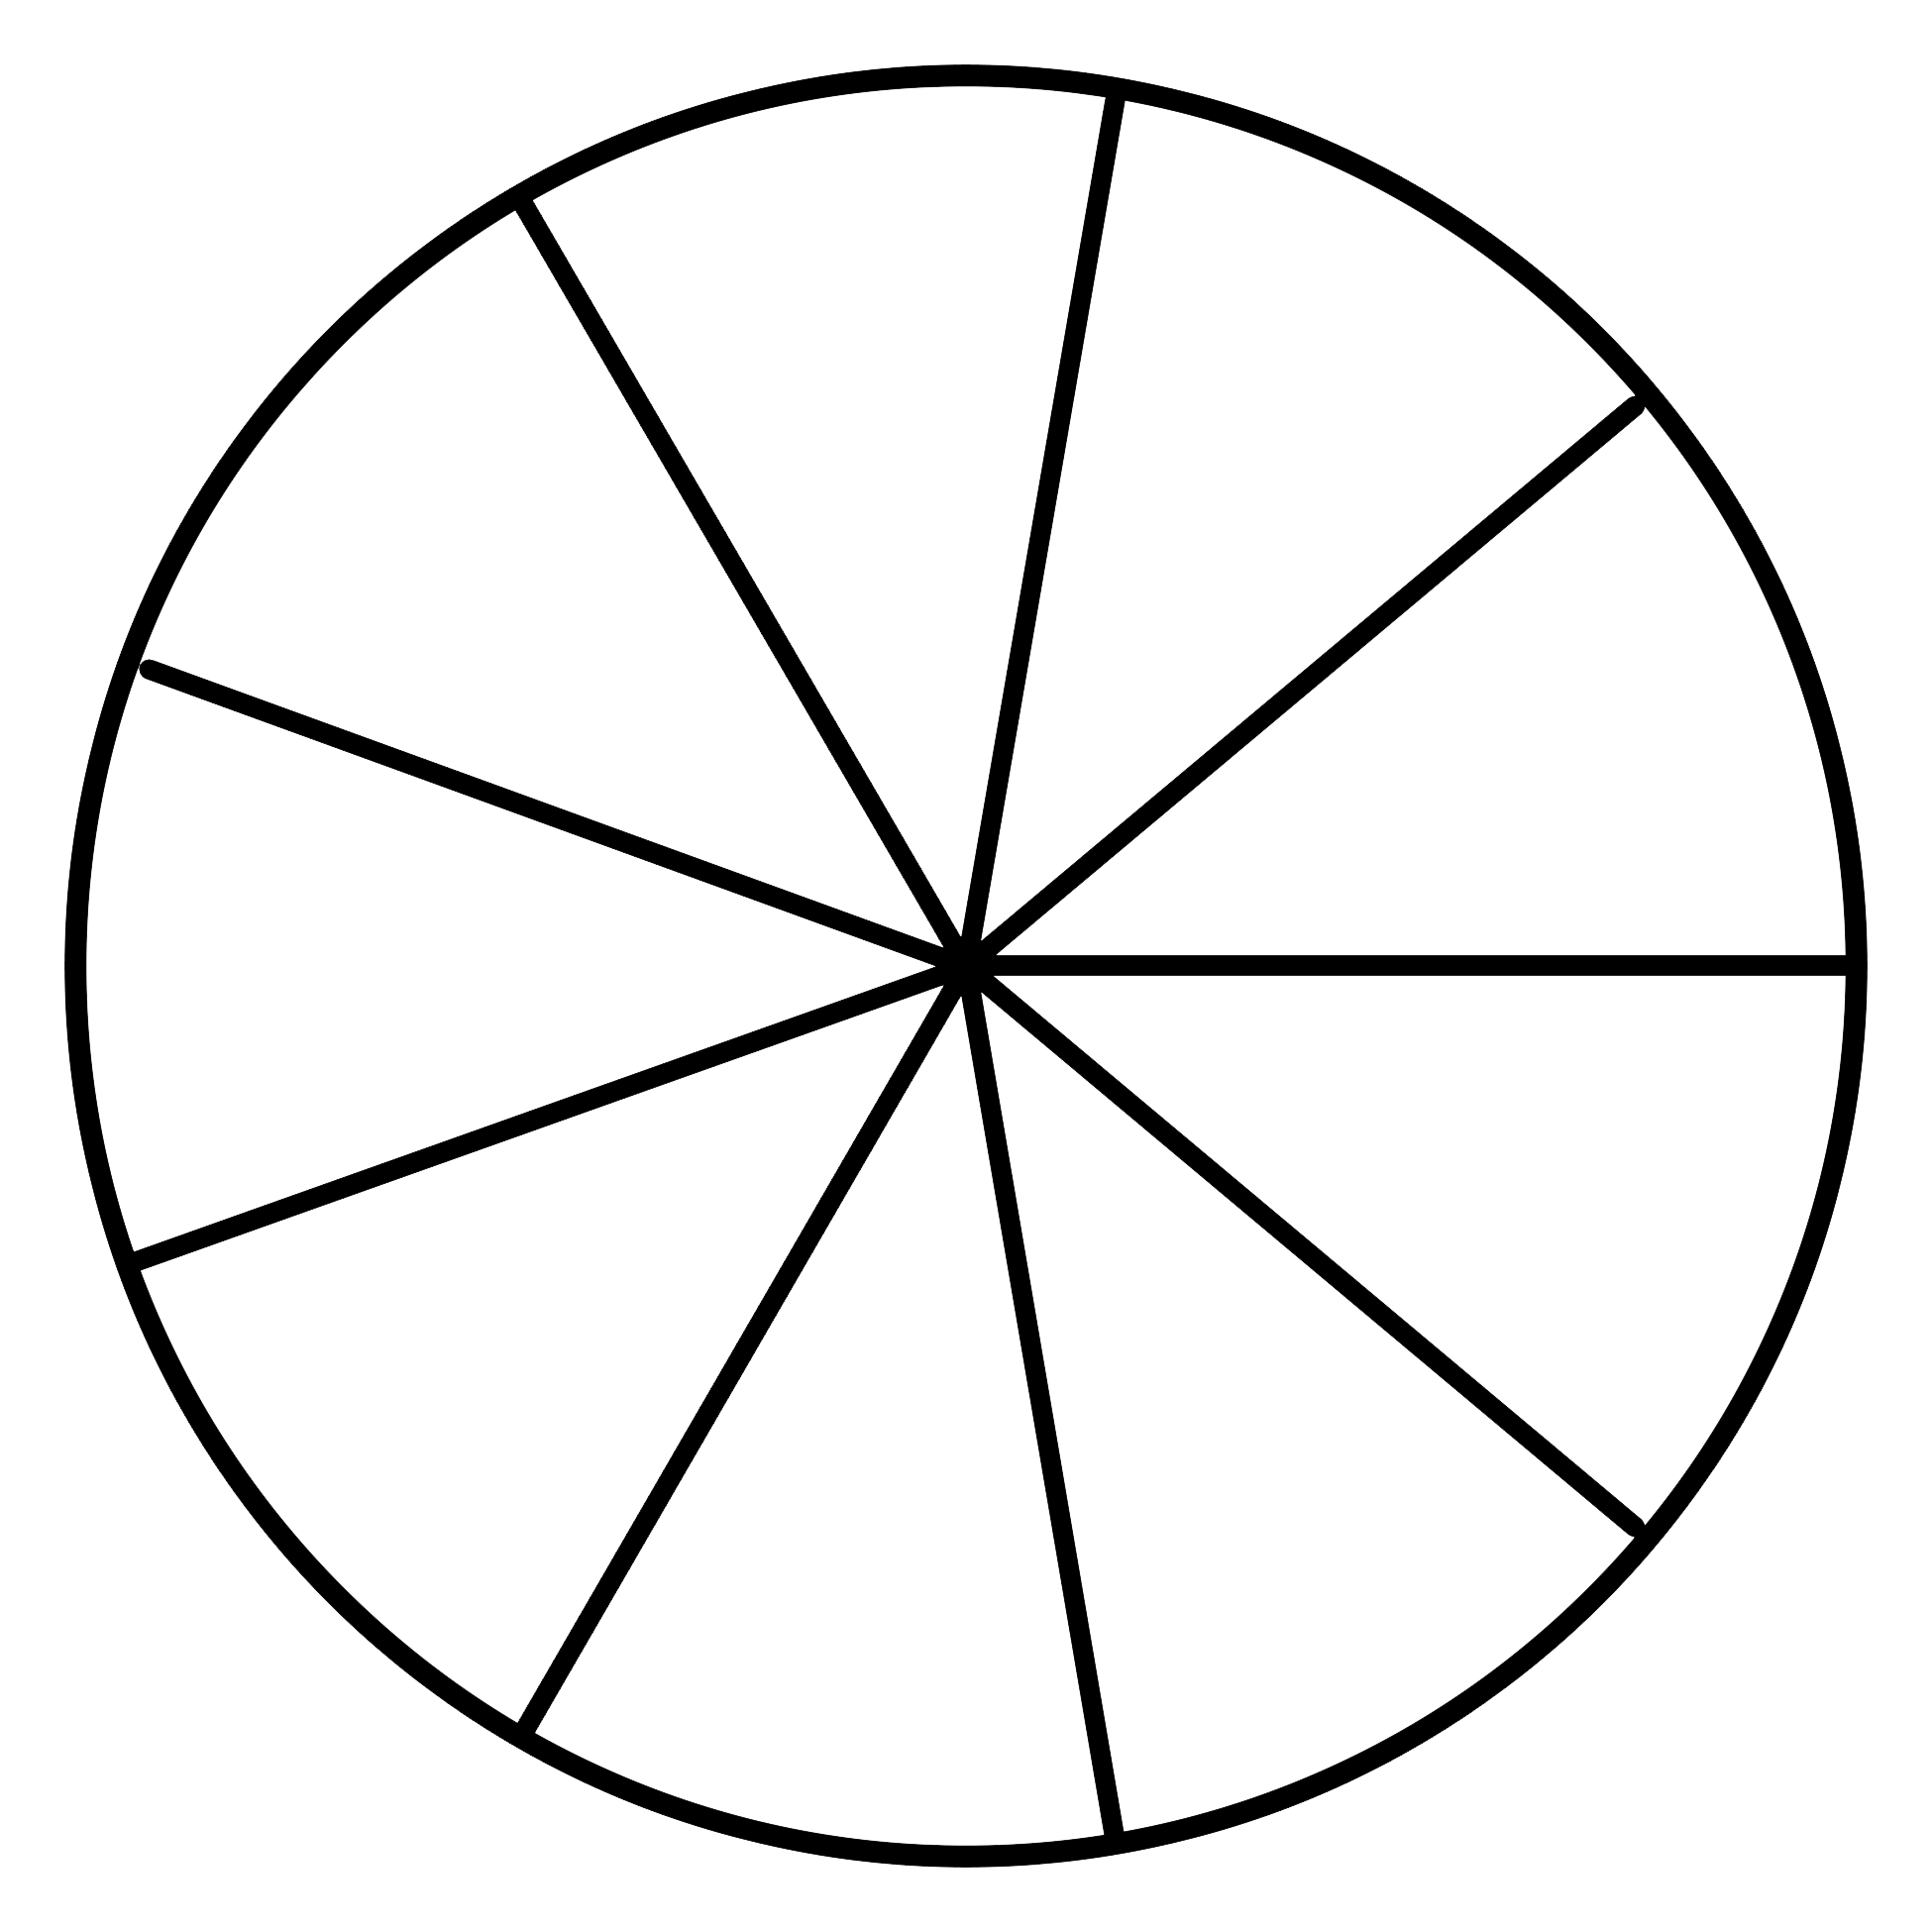 Нарисовать рисунок окружности. Окружность рисунок. Круги в круге нарисованный. Рисование кругами. Схематичные изображения круг в круге.